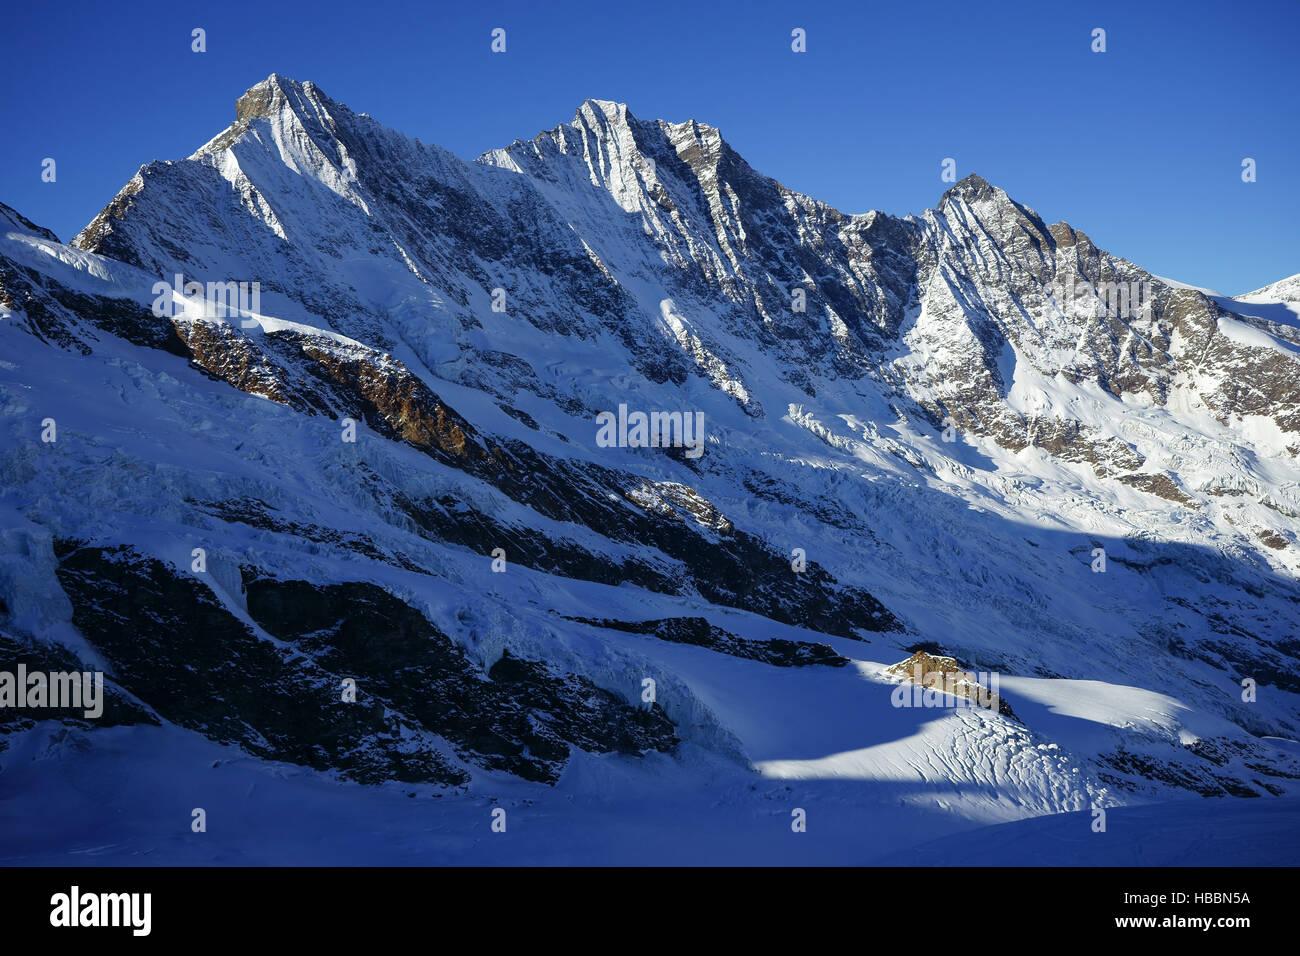 Mischabel Bergkette mit Täschhorn (l), Dom, Lenzspitze, Valais, Schweizer  Alpen, Schweiz Stockfotografie - Alamy